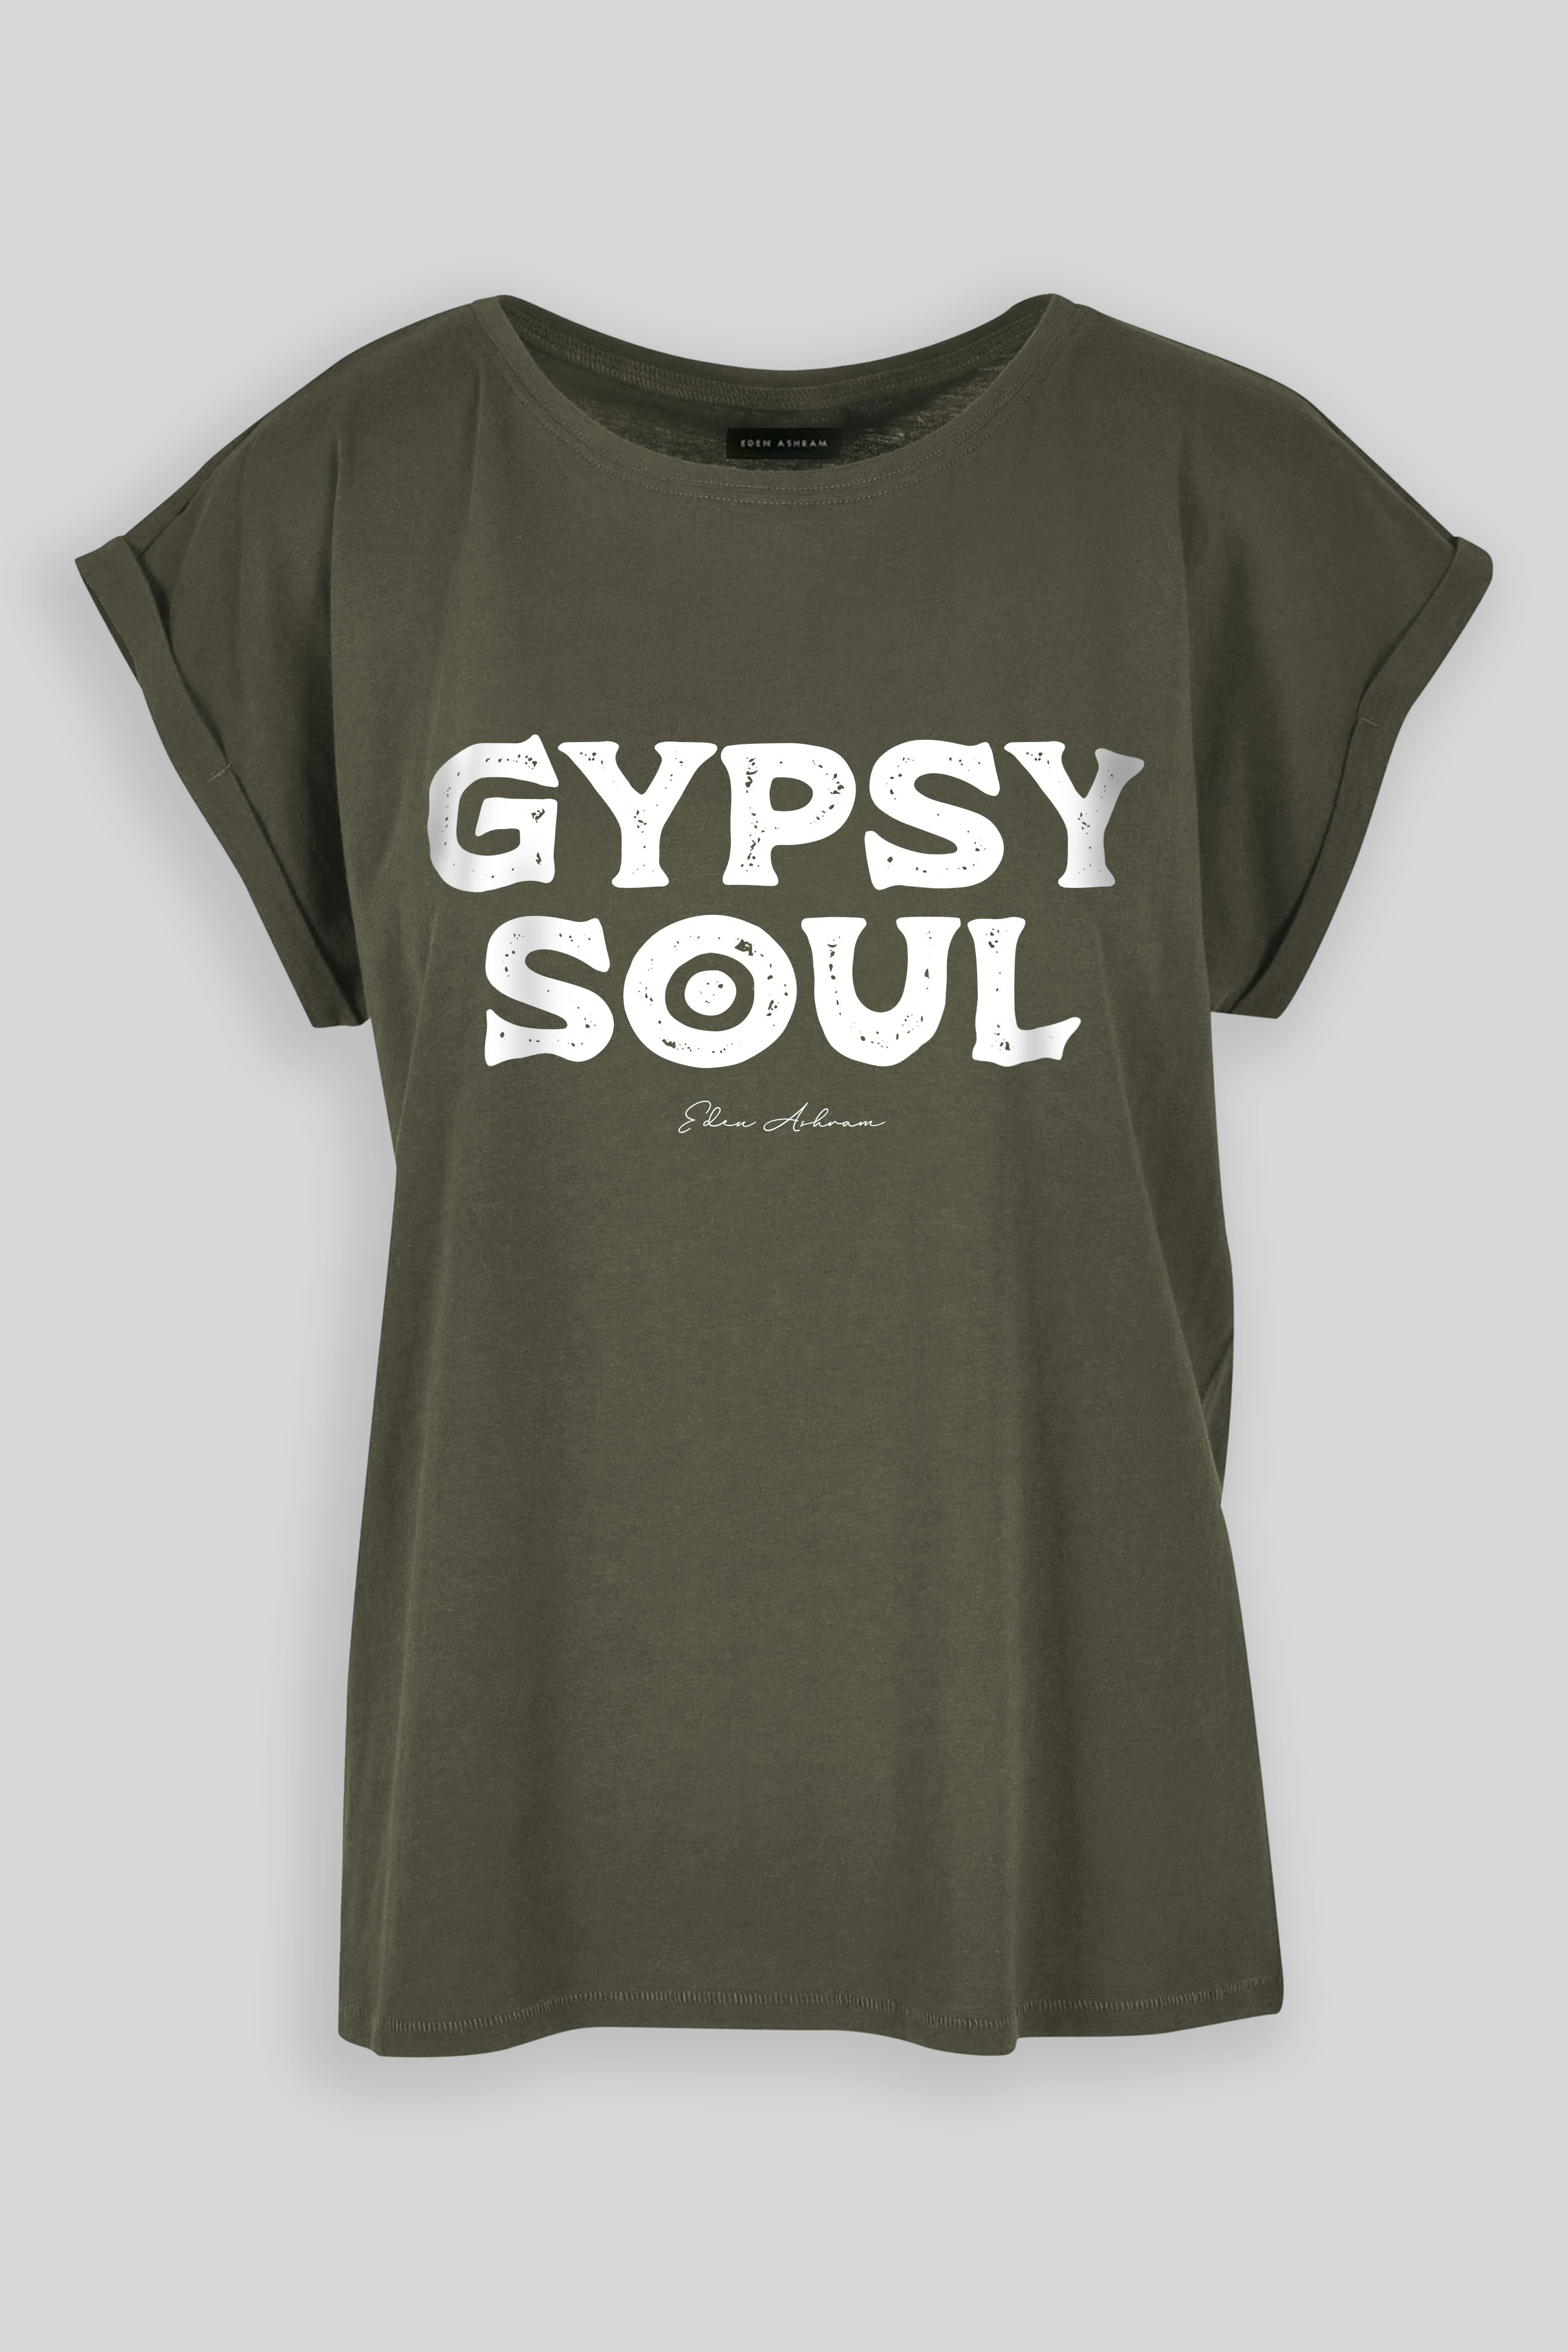 EDEN ASHRAM Gypsy Soul Cali T-Shirt Olive